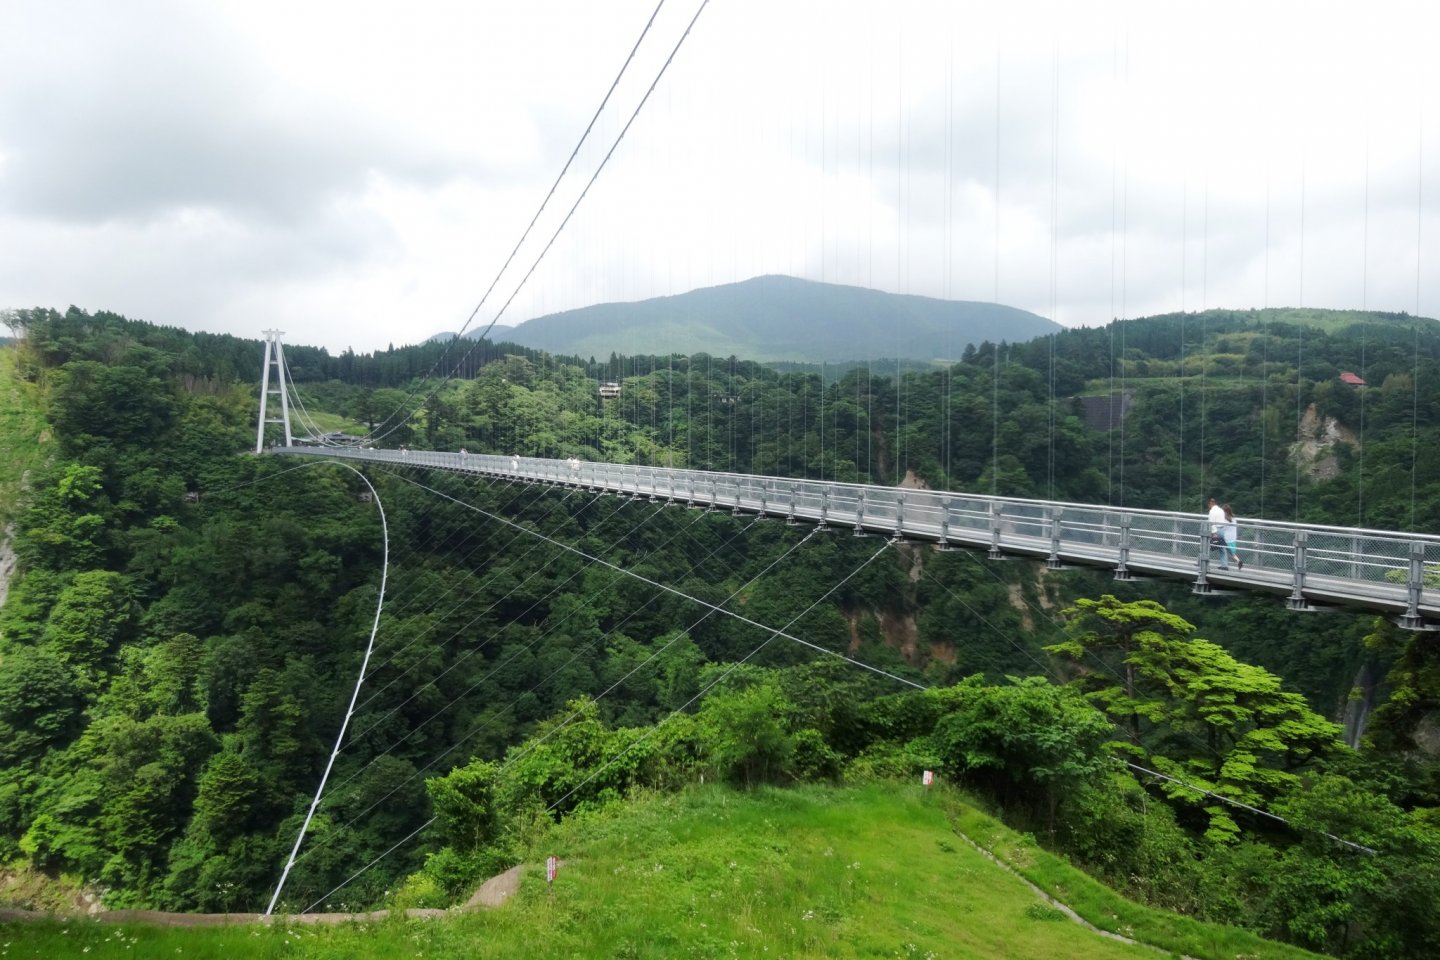 The Kokonoe Yume Suspension Bridge